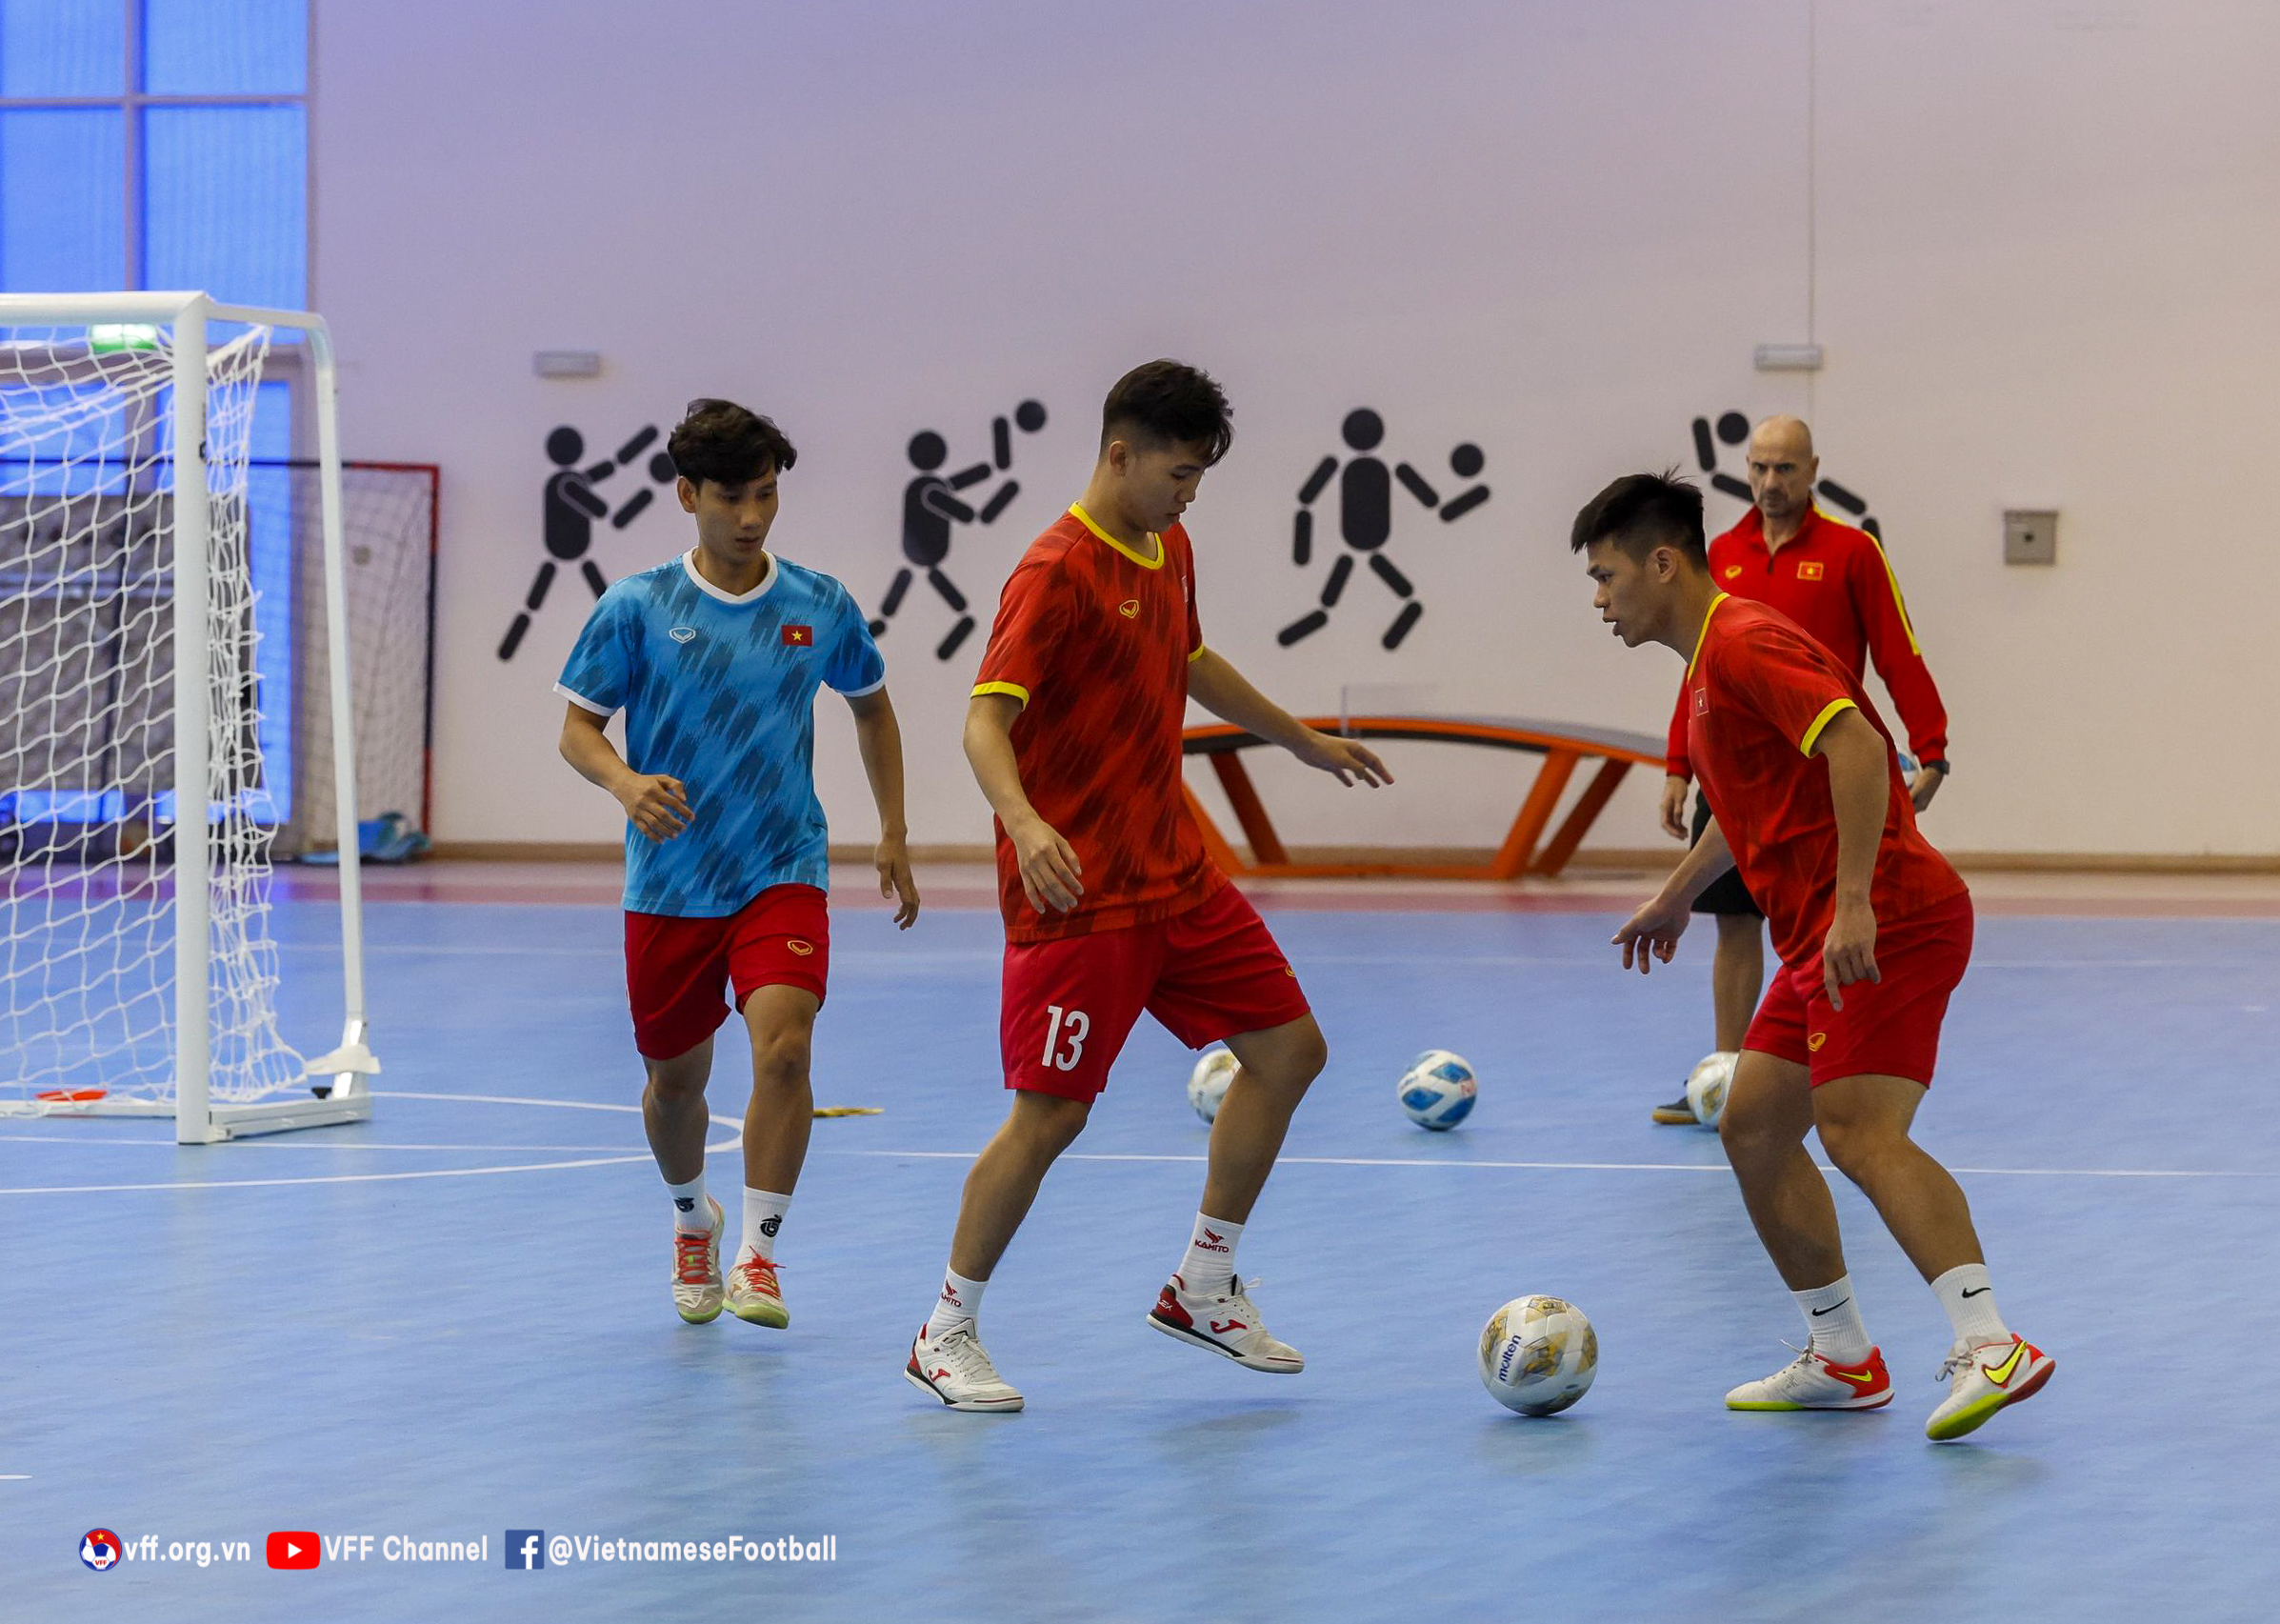 ĐT Việt Nam đẩy cao khối lượng, chọn điểm rơi trước thềm VCK futsal châu Á 2022 - Ảnh 4.